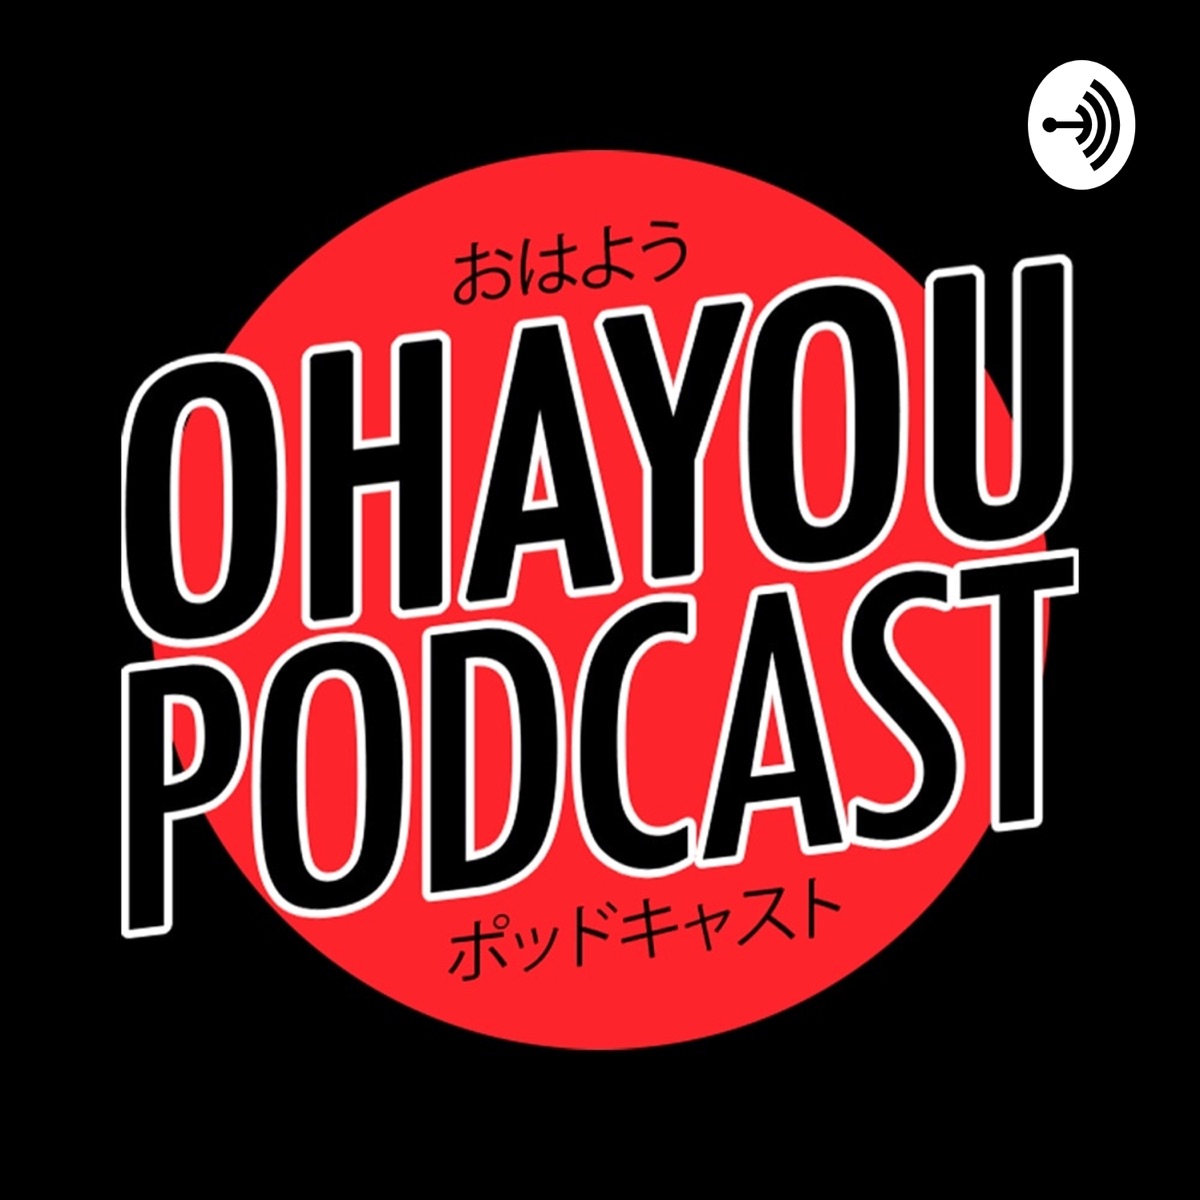 Ohayou Podcast – Podcast – Podtail